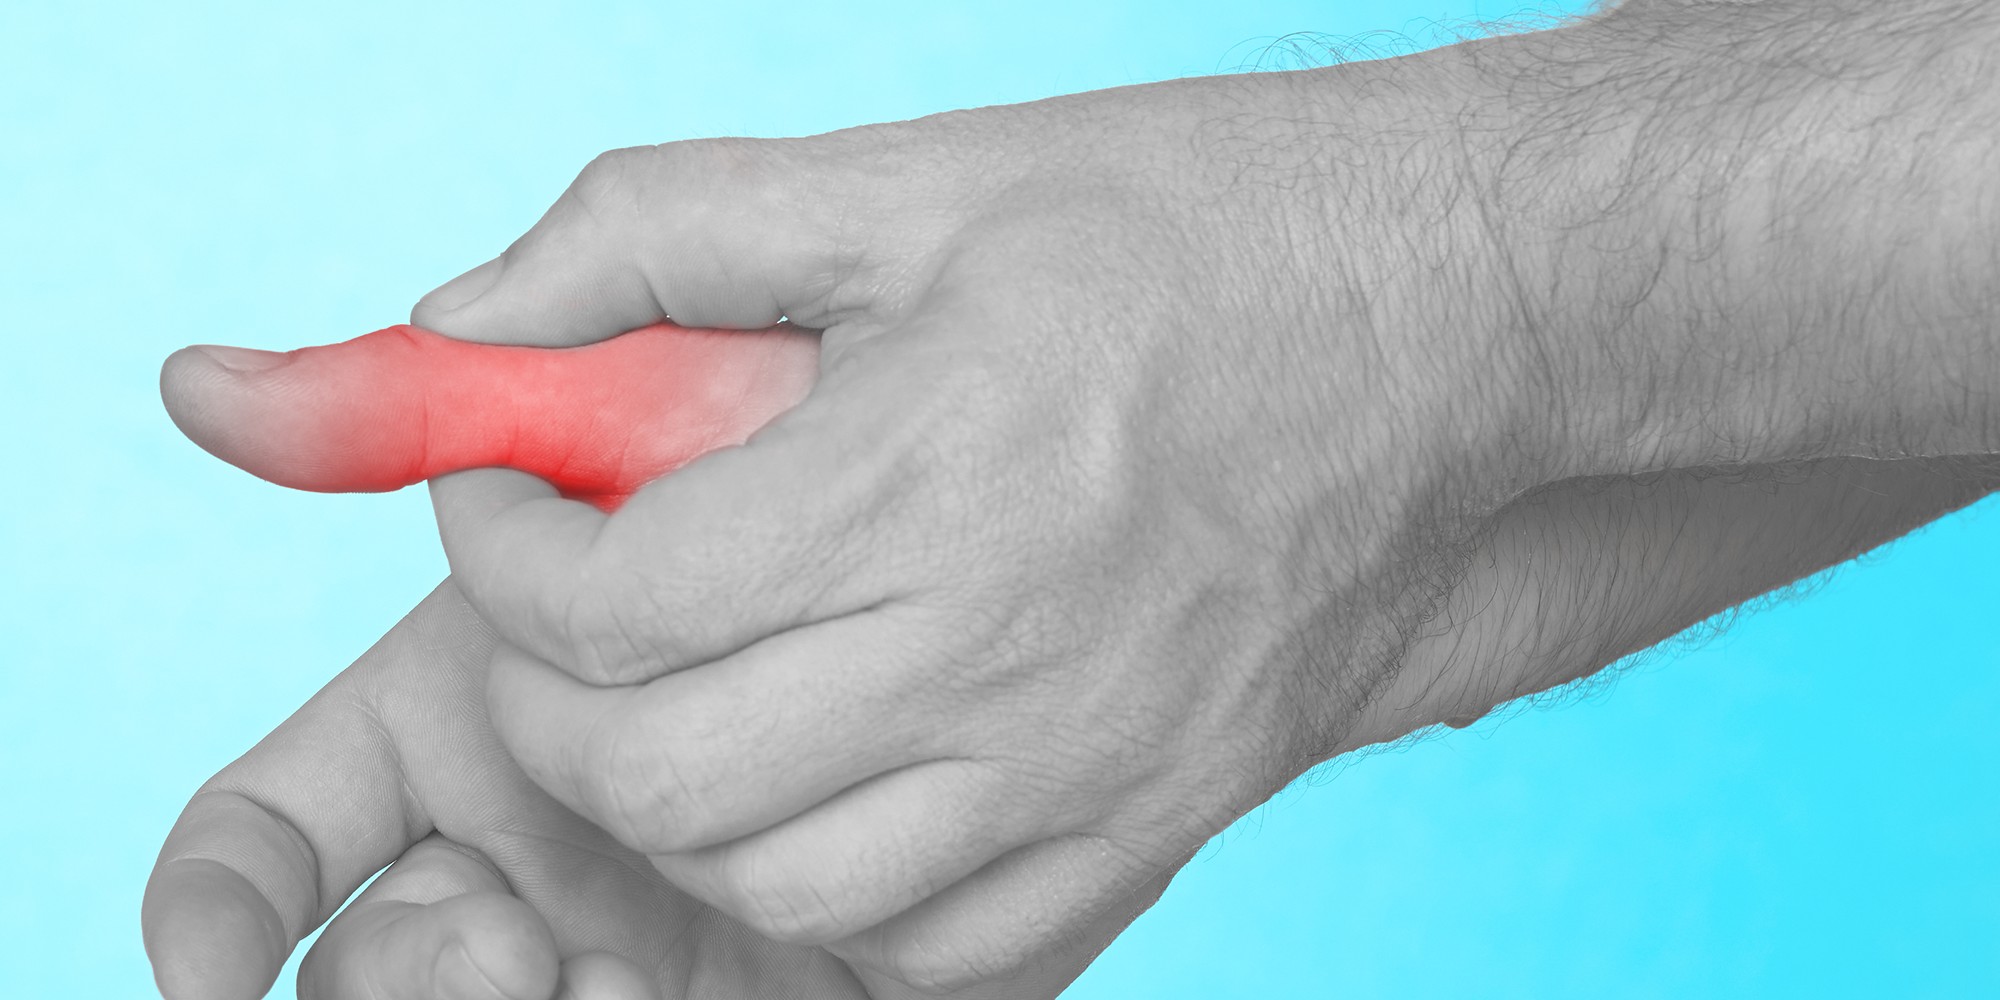 Bol u zglobovima prstiju: uzroci i liječenje upale